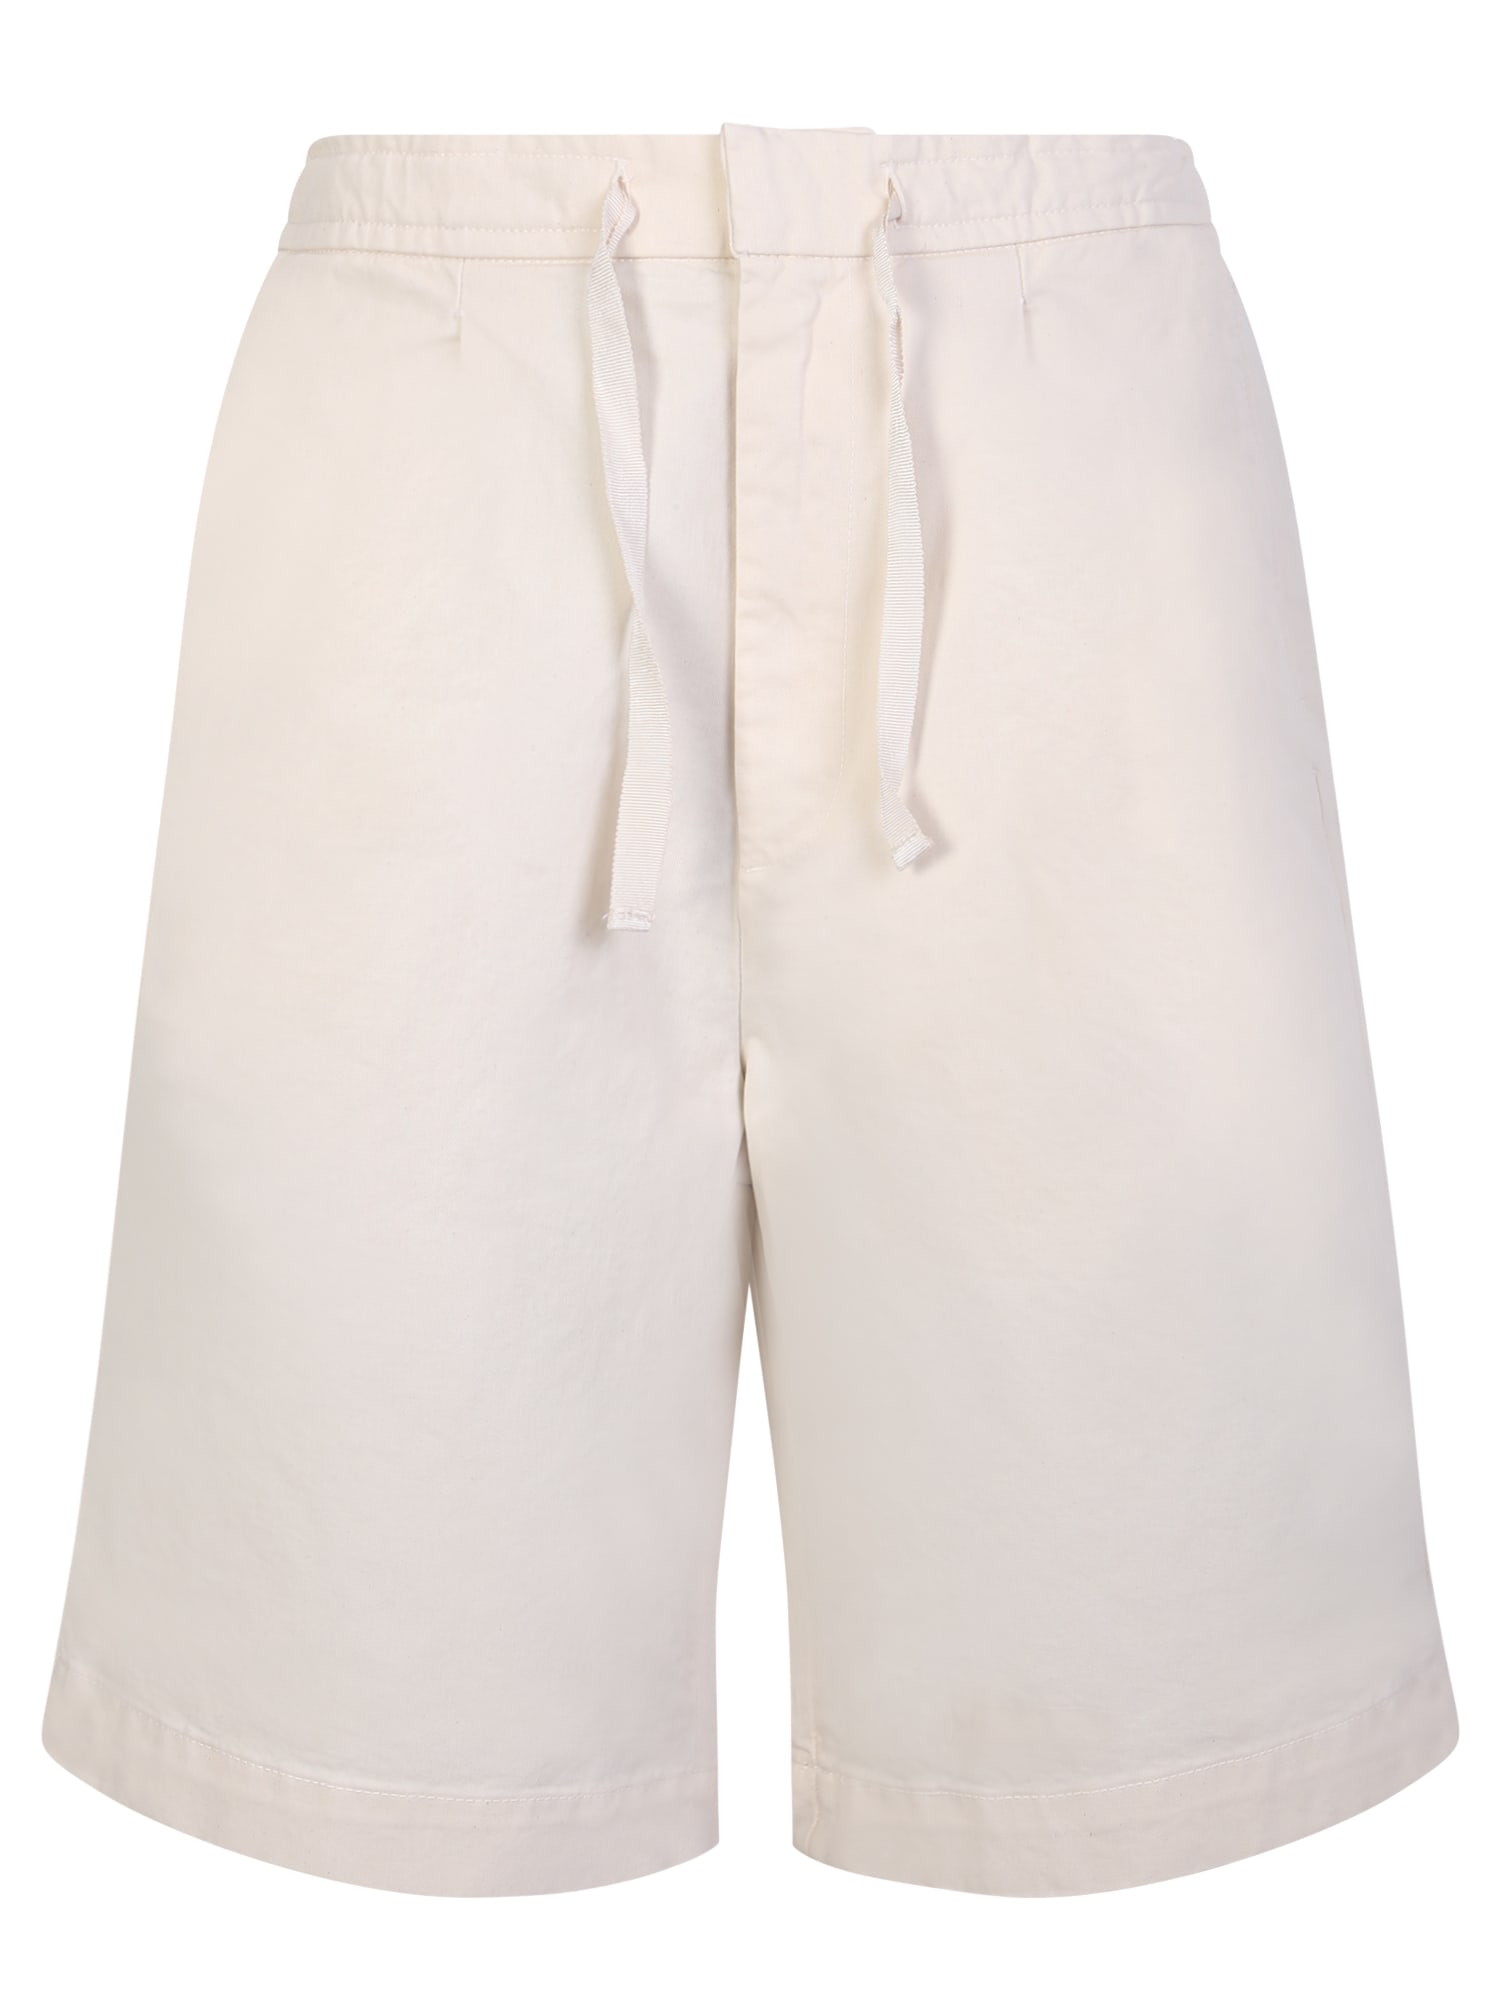 Officine Générale Light Beige Cotton Shorts